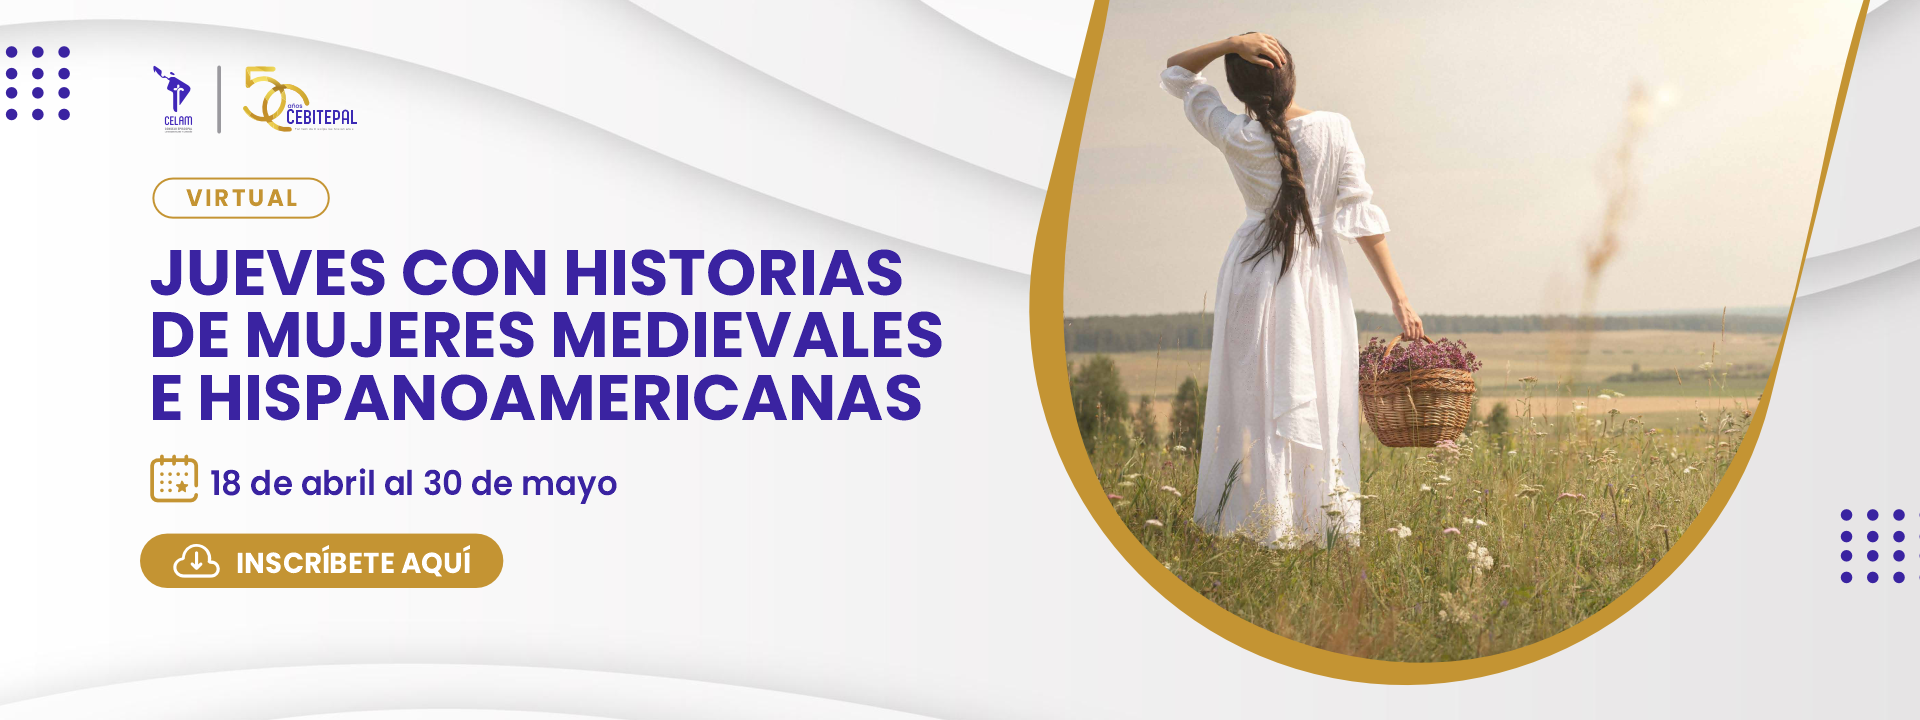 Jueves con historias de Mujeres medievales e hispanoamericanas 